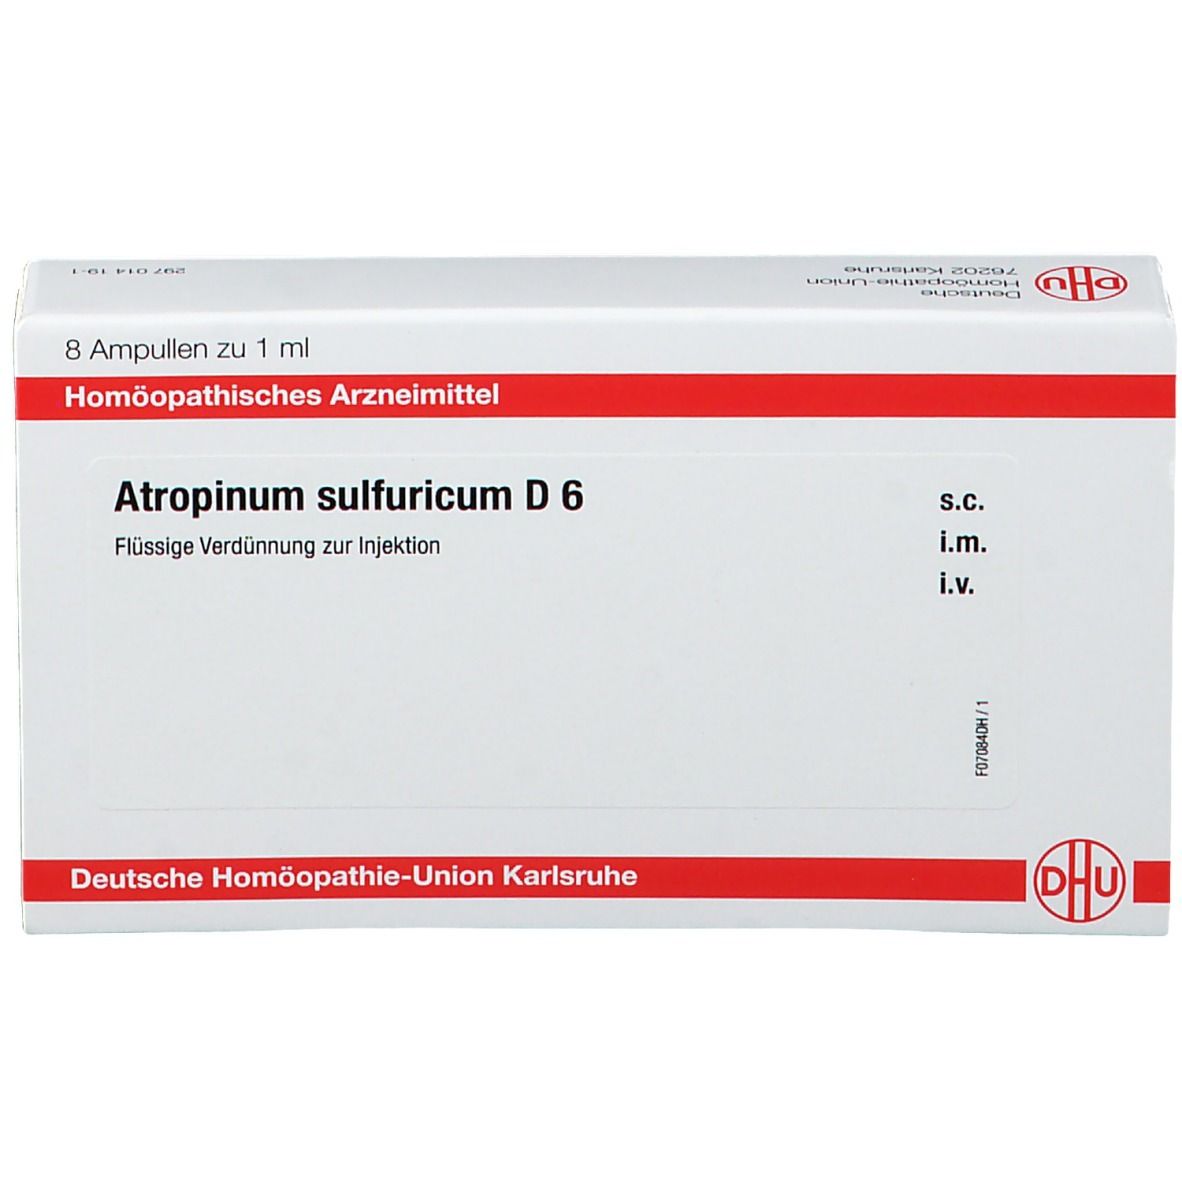 DHU Atropinum Sulfuricum D6